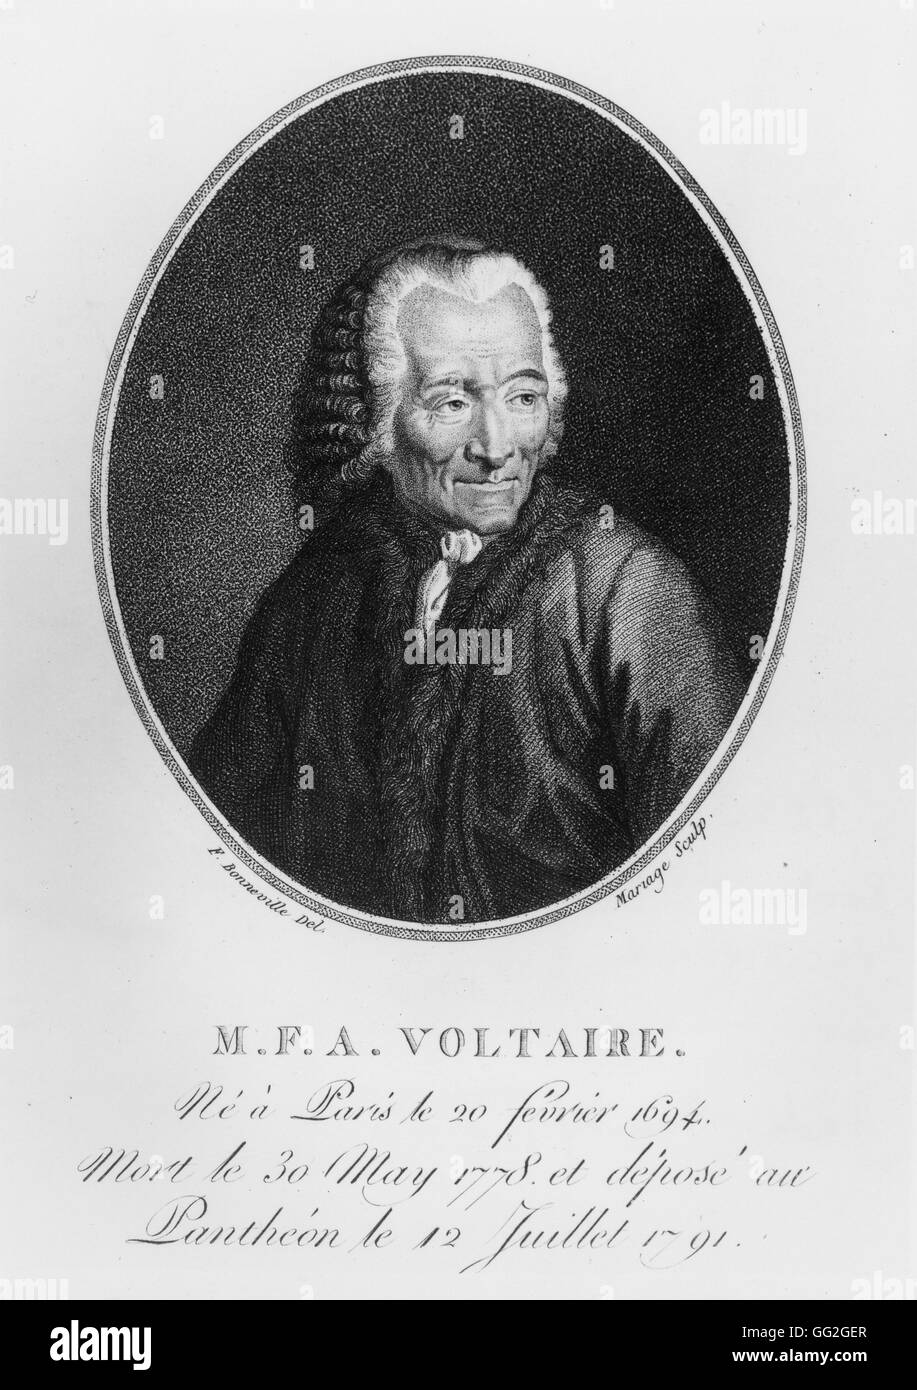 Voltaire (François Marie Arouet) dans sa vieillesse. Auteur et philosophe français. Gravure du xixe siècle. Banque D'Images